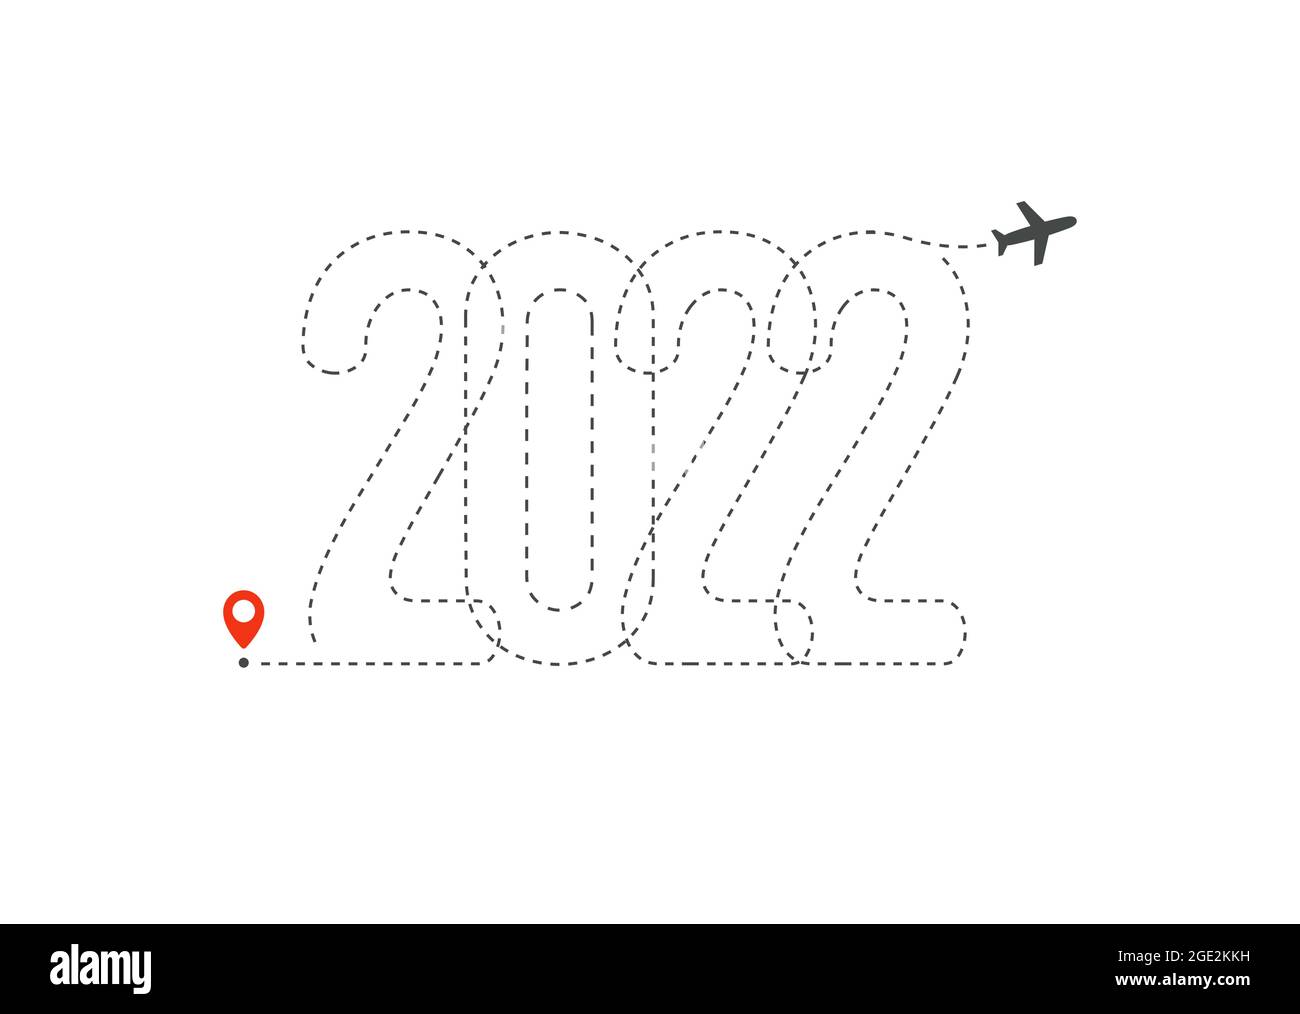 Bonne année vecteur Illustration 2022 année. Direction du trajet de l'aéronef de 20 20 numéros, graphique de la destination et de l'article de départ pour le billet, l'affiche Illustration de Vecteur